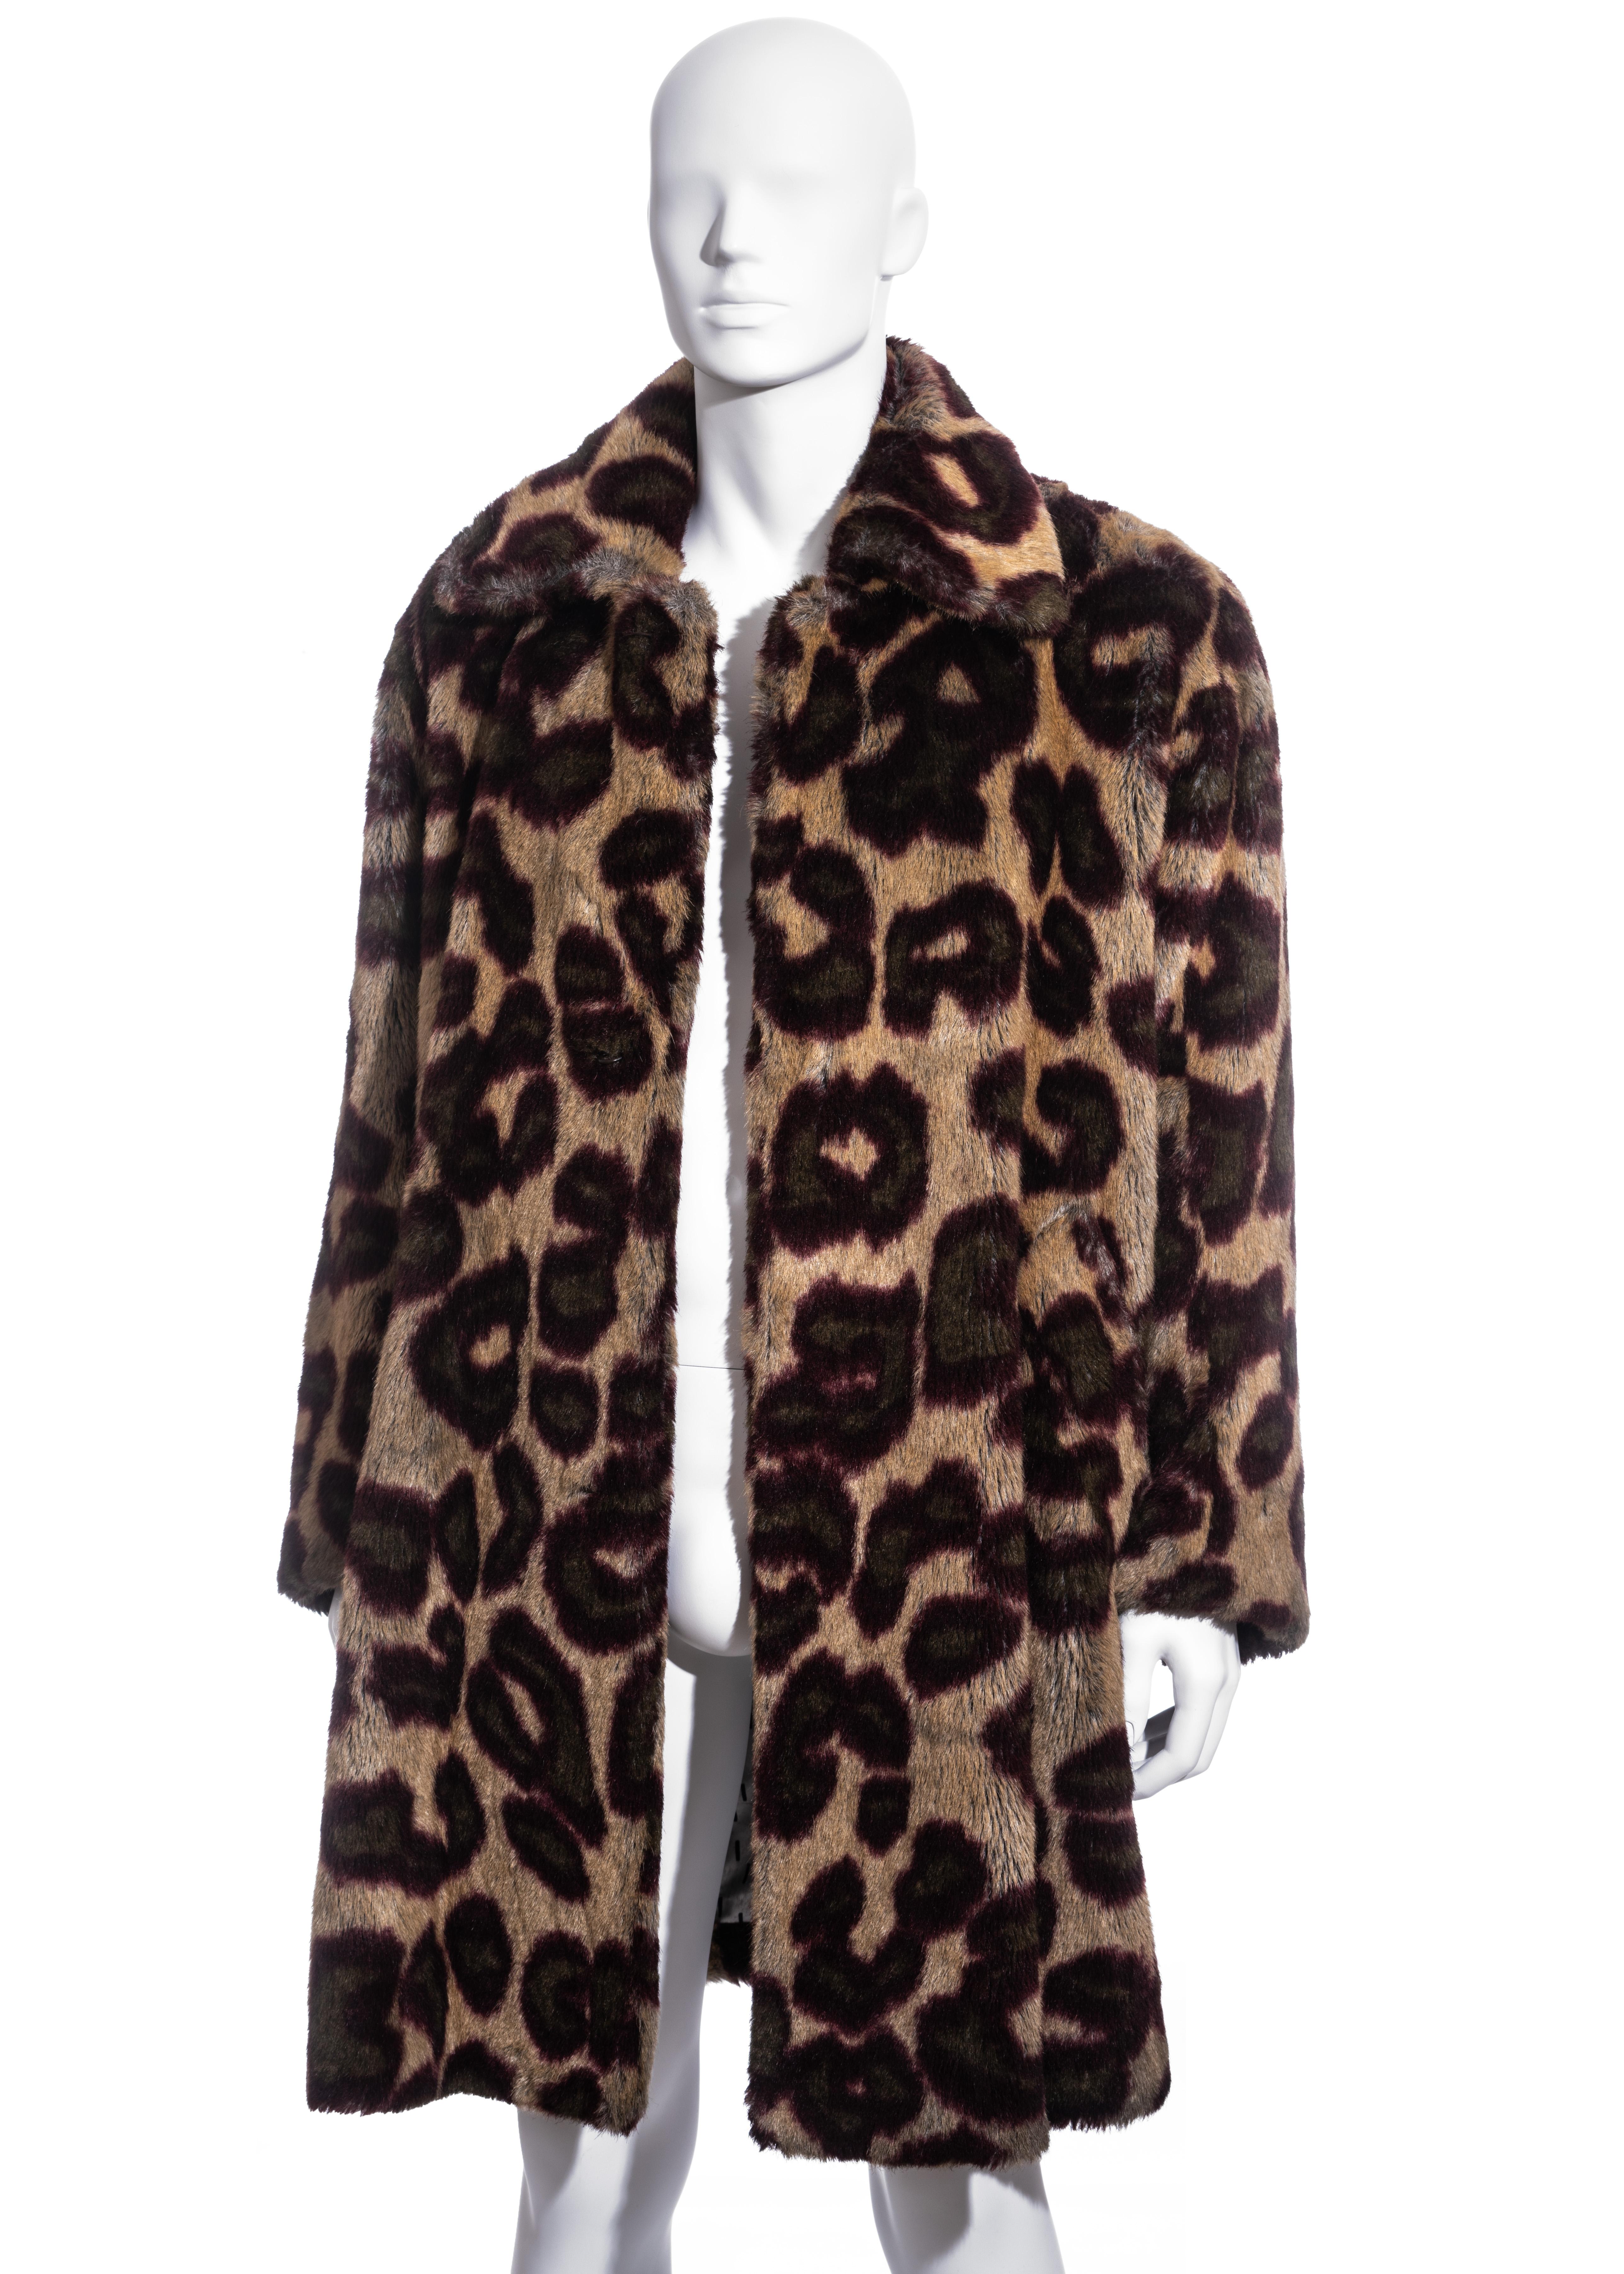 Men's Unisex Vivienne Westwood leopard print faux fur coat, fw 1998 For Sale